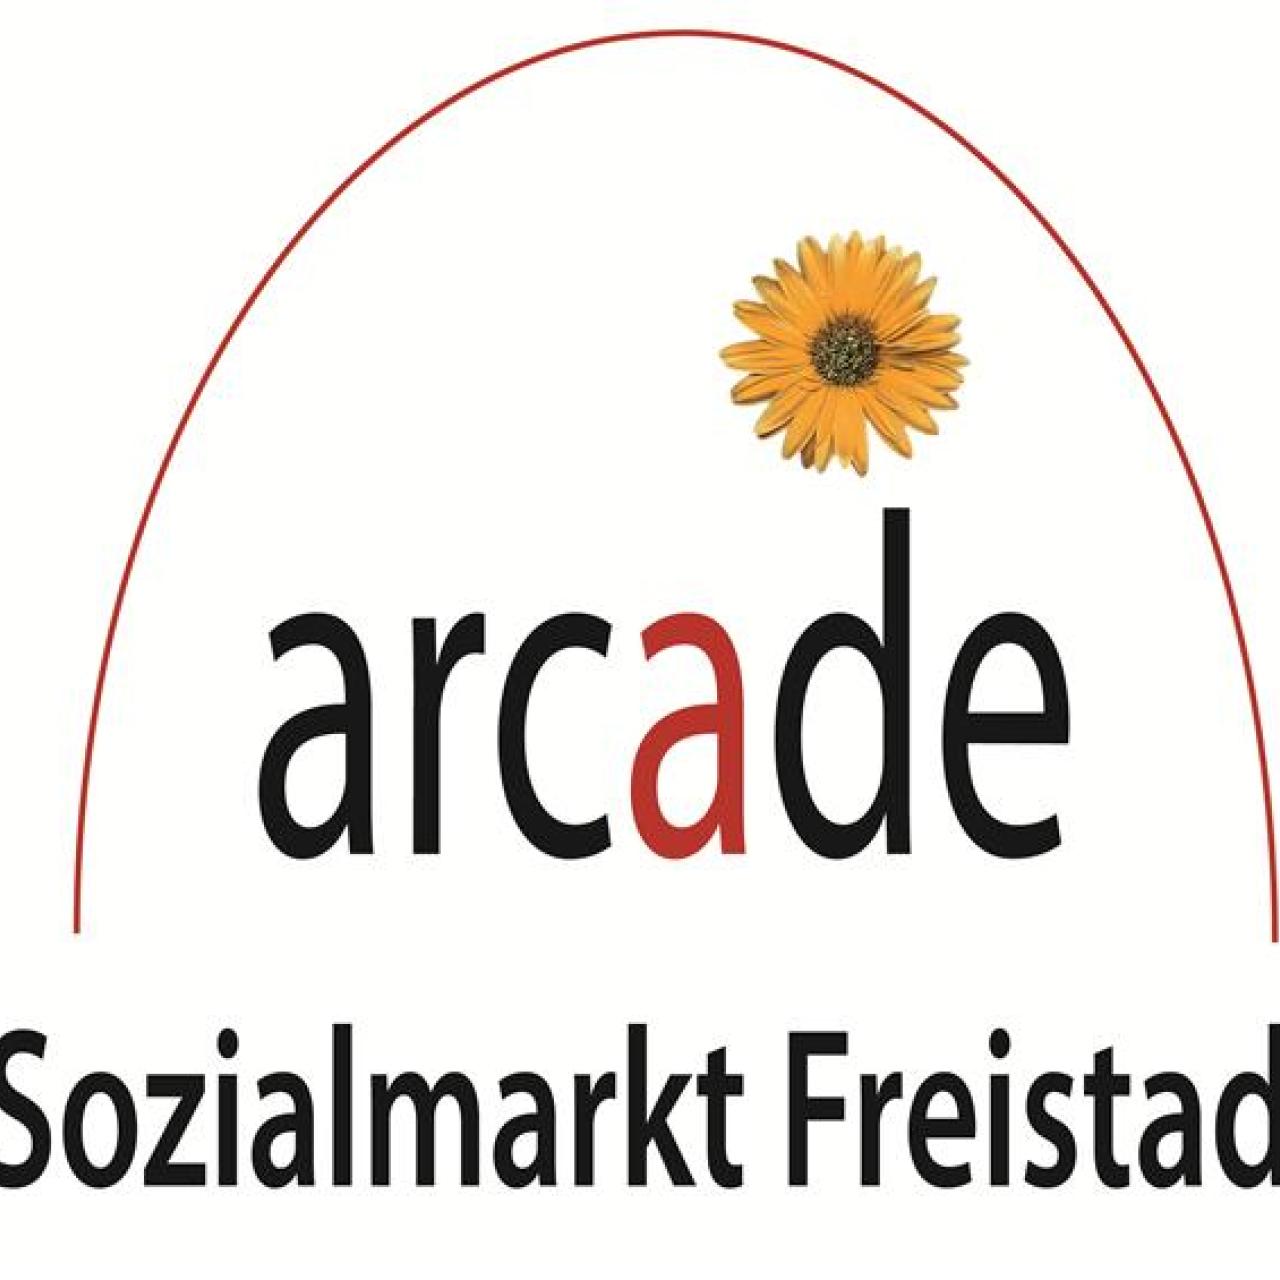 Arcade Sozialmarkt Freistadt